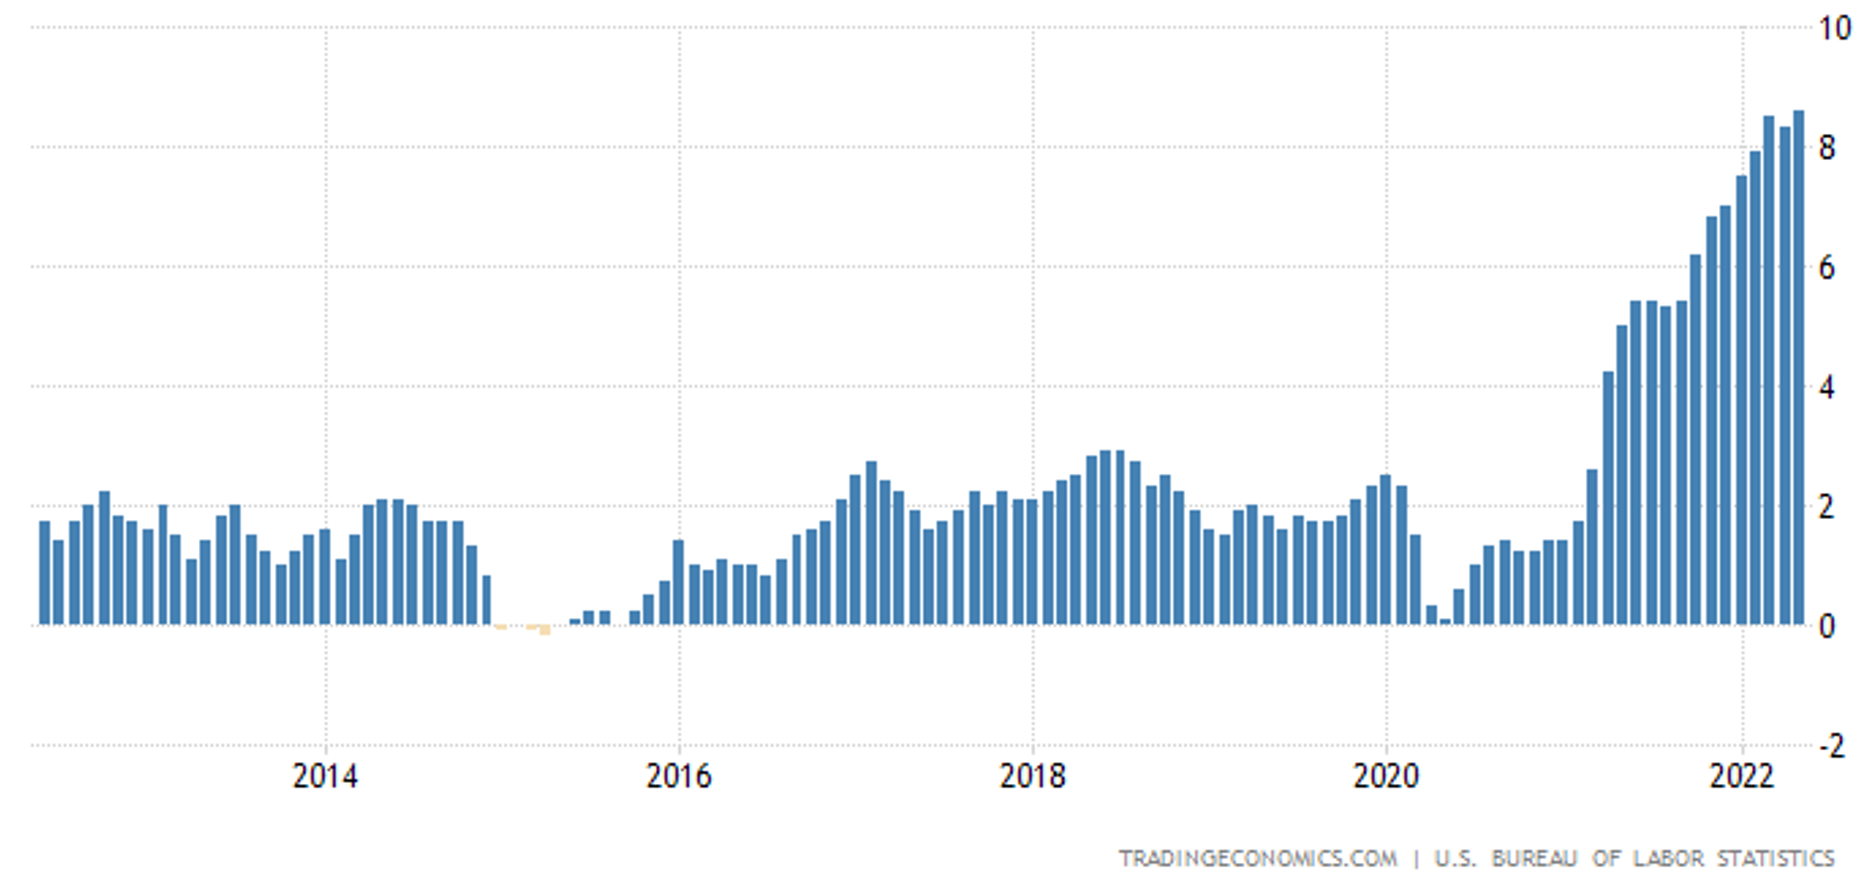 Devisenmarkt-Update - US-Inflation in den letzten 10 Jahren